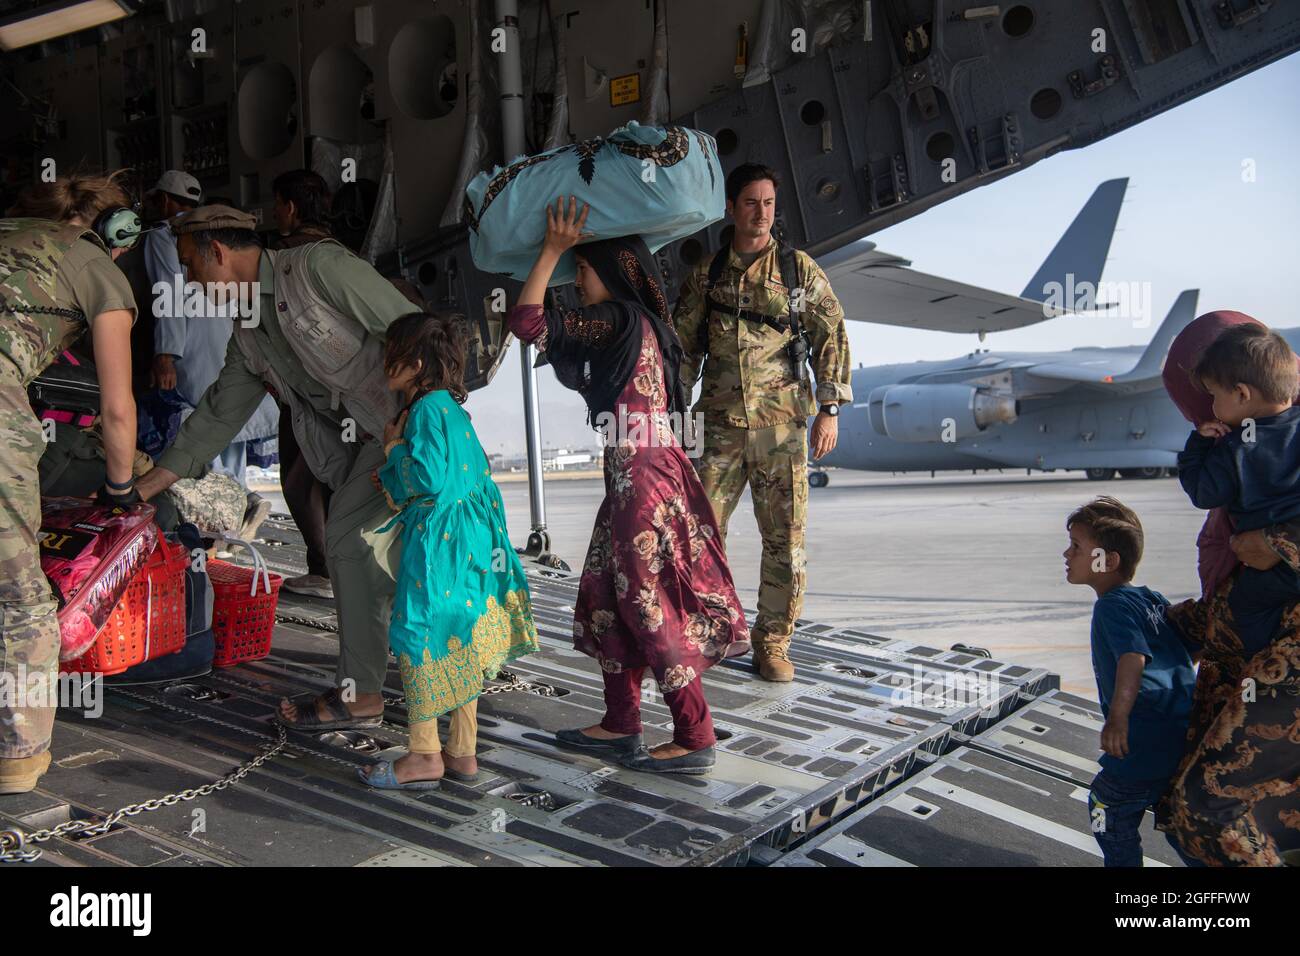 Kaboul, Afghanistan. 24 août 2021. Un aviateur de la Force aérienne des États-Unis avec le 816e Escadron de transport aérien expéditionnaire aide les réfugiés afghans à monter à bord d'un avion C-17 Globemaster III pour l'évacuation de l'aéroport international Hamid Karzaï pendant le refuge de l'opération alliés, le 24 août 2021 à Kaboul, en Afghanistan. Credit: Planetpix/Alamy Live News Banque D'Images